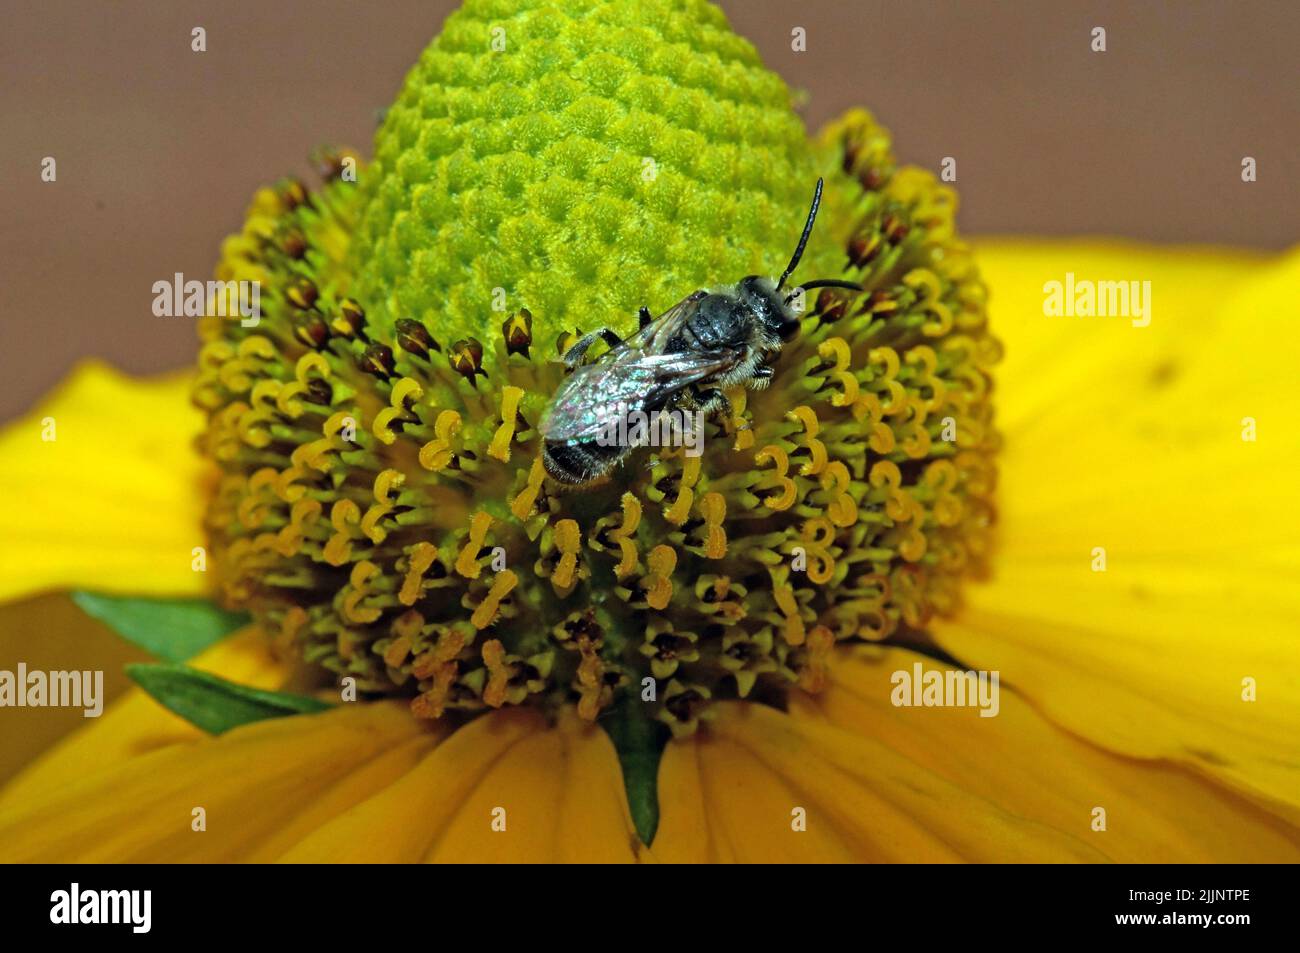 Ceratina cyanea ist eine Biene aus der Familie der Apidae. Stock Photo